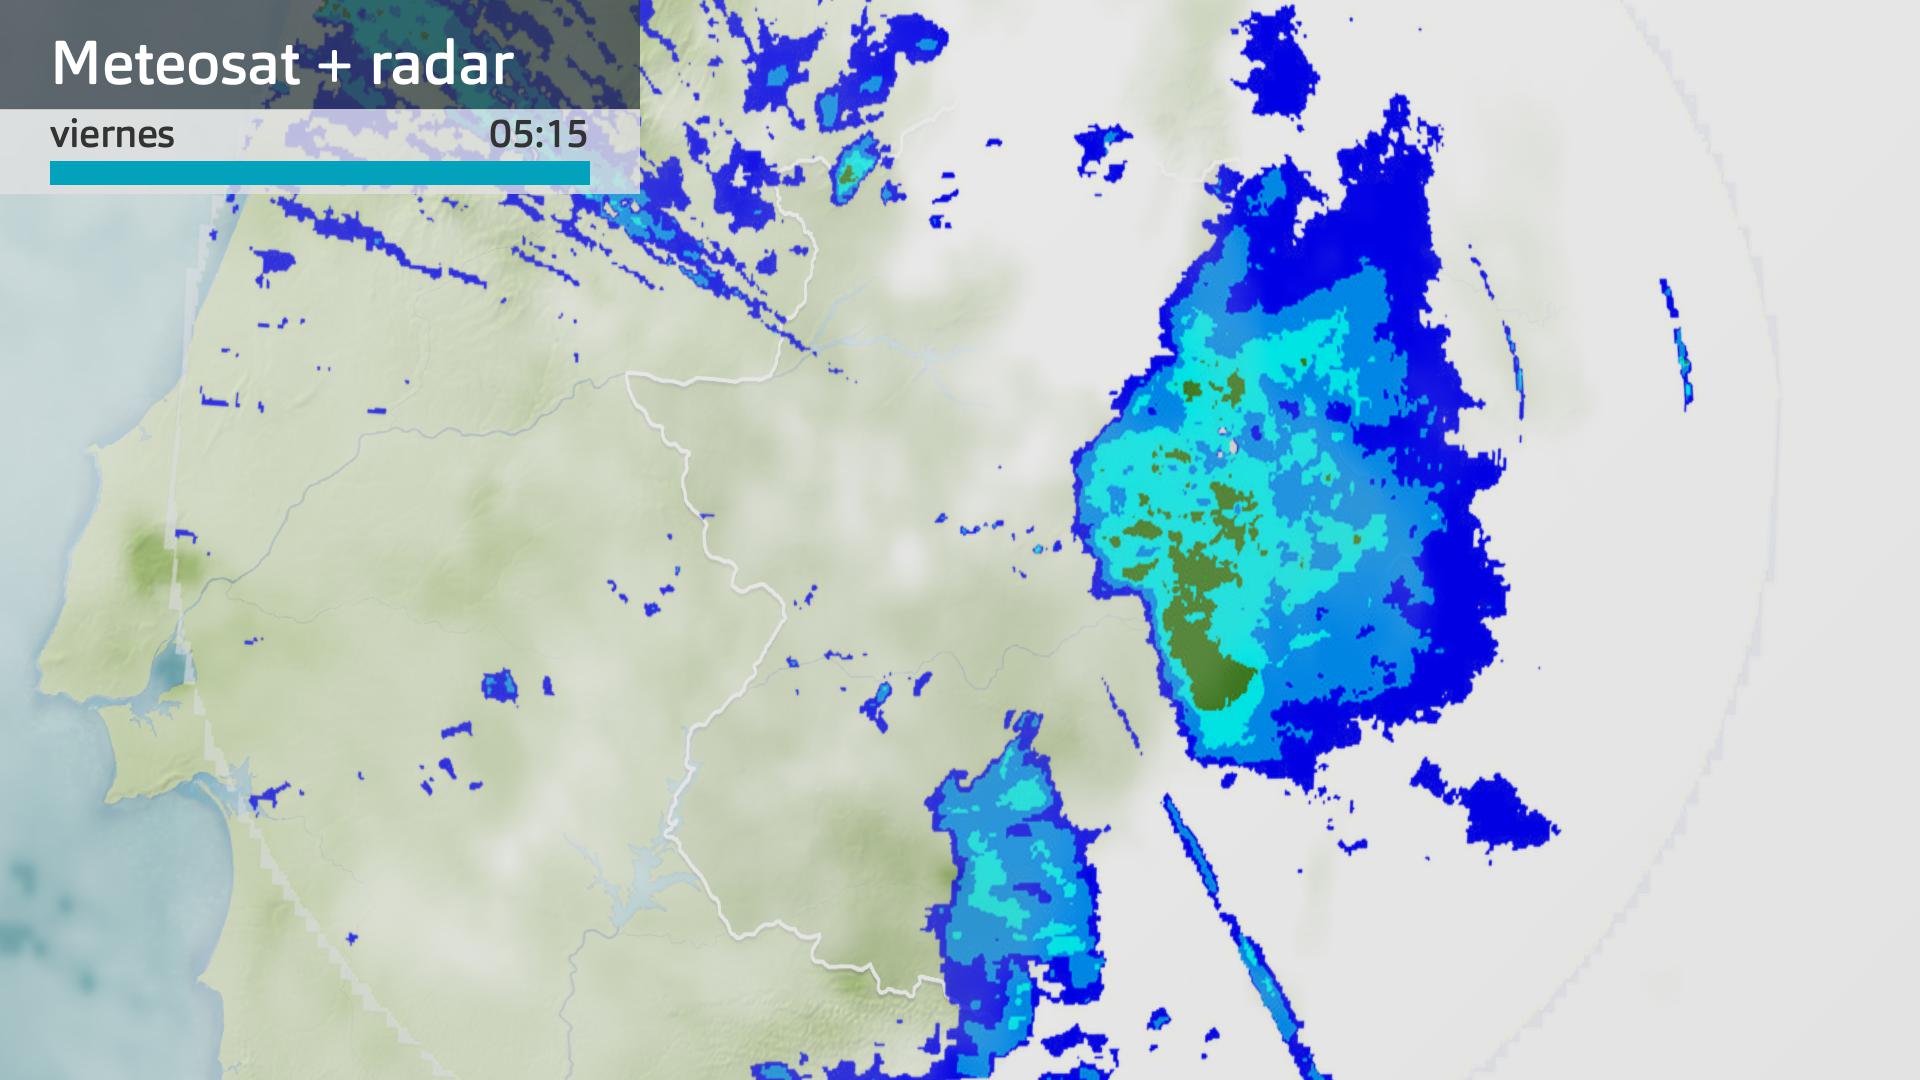 Imagen del Meteosat + radar meteorológico viernes 9 de febrero 5:15 h.